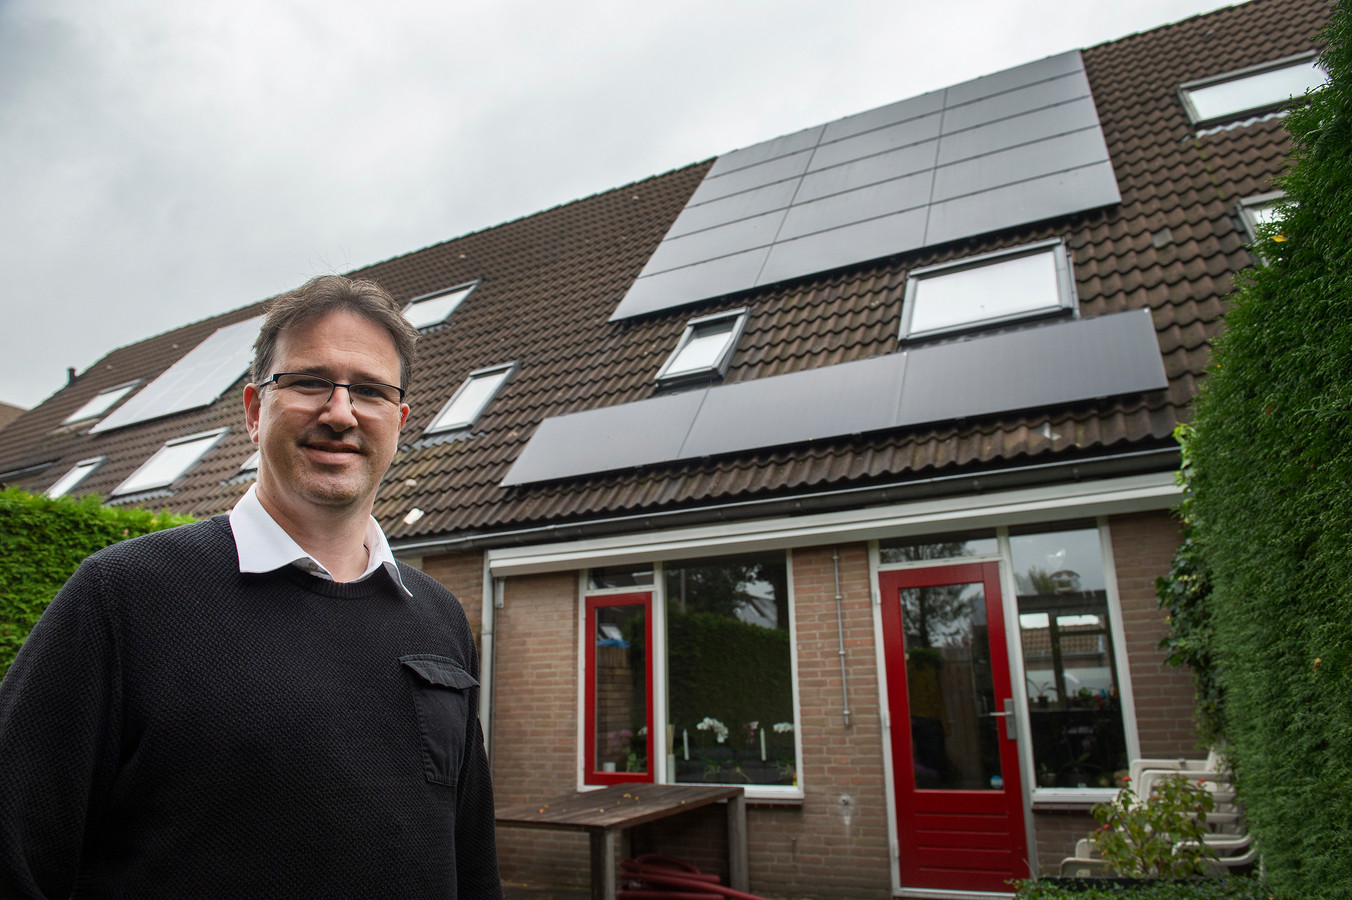 Zonnepanelen op het dak zijn maar een van de vele middelen die Maikel de Bakker inzette om zijn huis energiezuinig te maken.